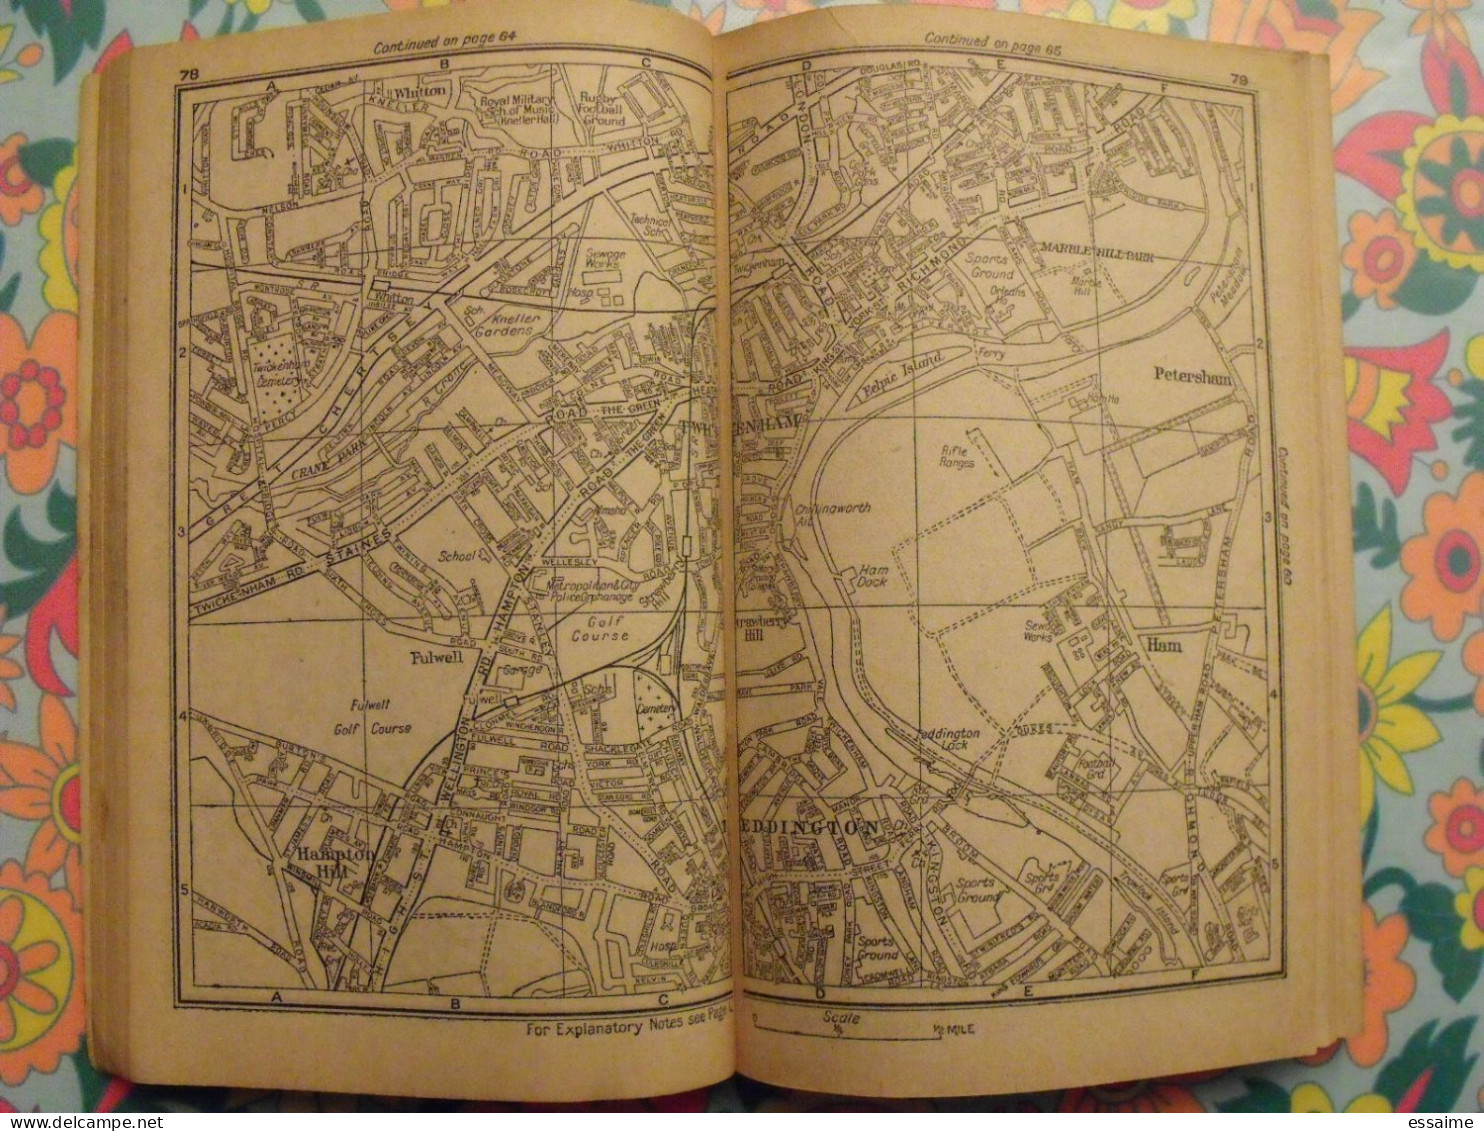 A1 the atlas of London and outer suburbs. plans de Londres par quartiers. sd (vers 1930)